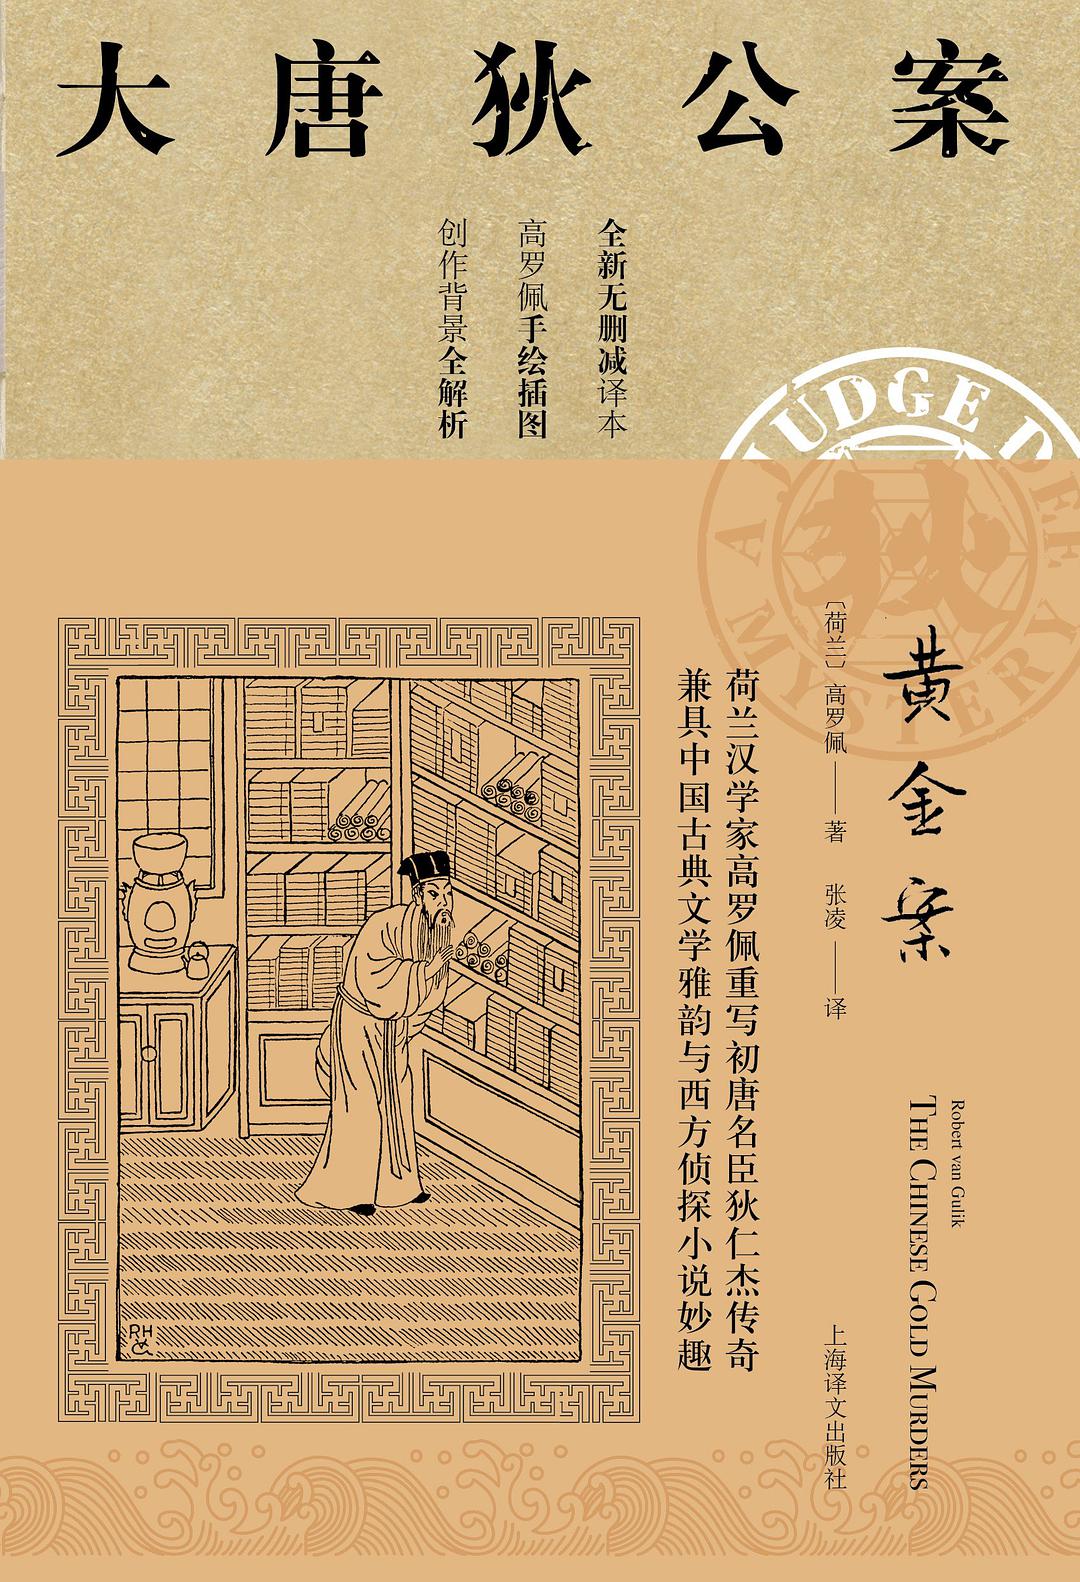 黄金案 (Chinese language, 2019, 上海译文出版社)